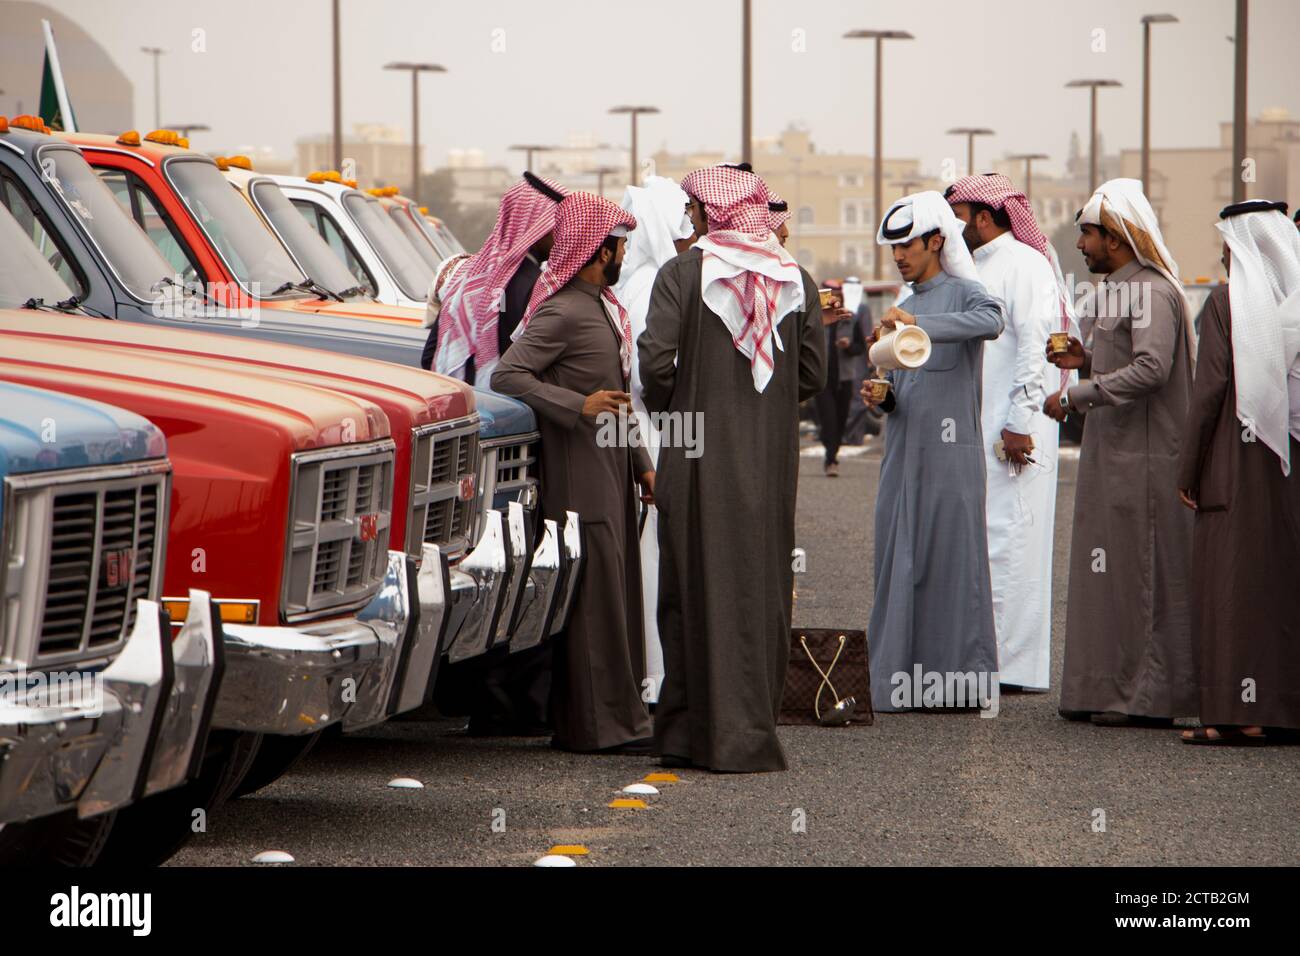 Eine Gruppe kuwaitischer Männer, die in dishdashas gekleidet sind, genießt eine Tasse arabischen Kaffee gewürzt mit Kardamom, wenn sie ihre alten GMC-Lastwagen ausstellt. Stockfoto